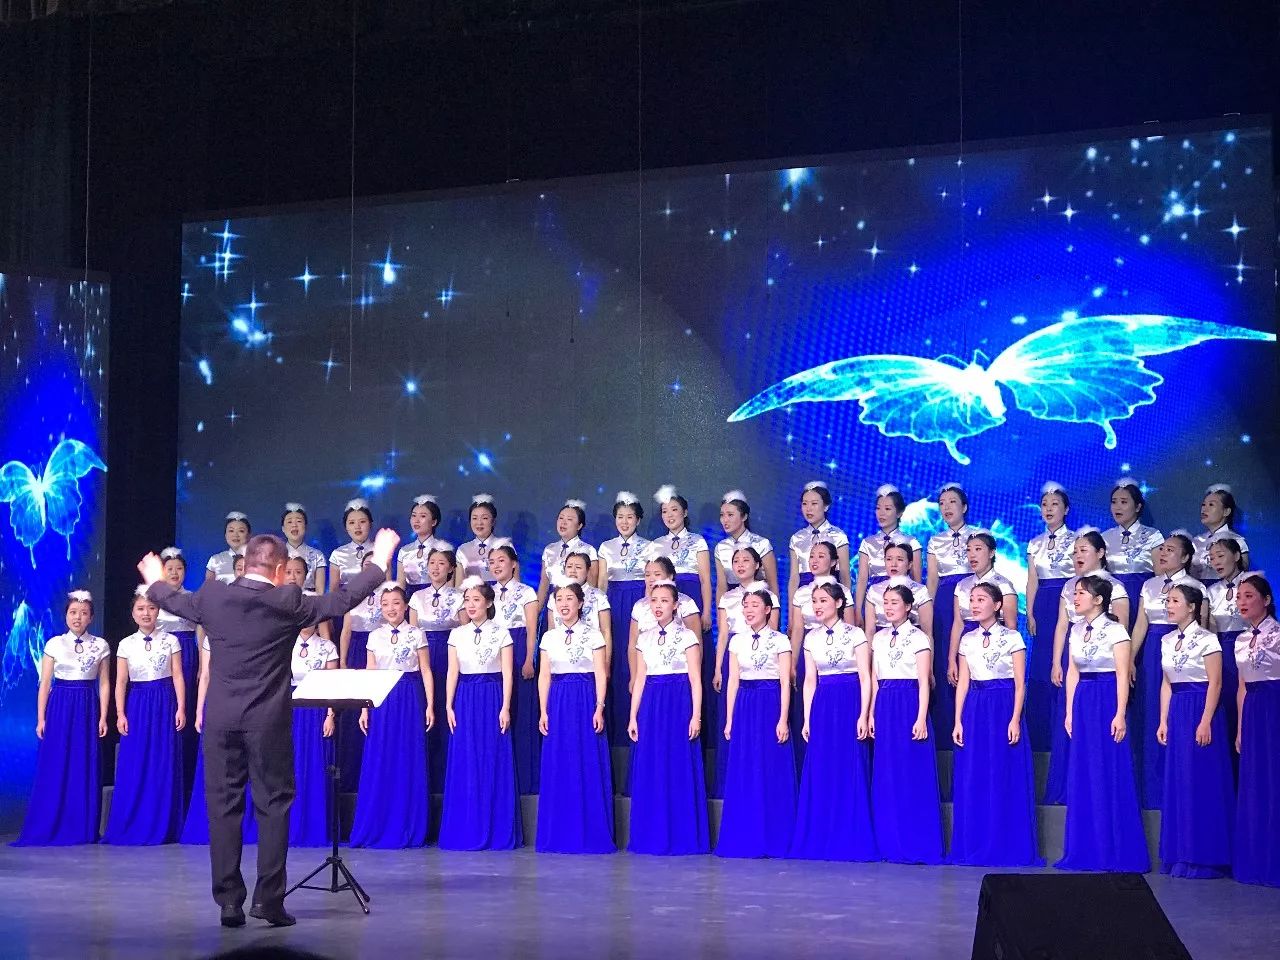 合唱团应邀参加了第七届中国音乐金钟奖合唱展演,重庆市文明礼仪大型